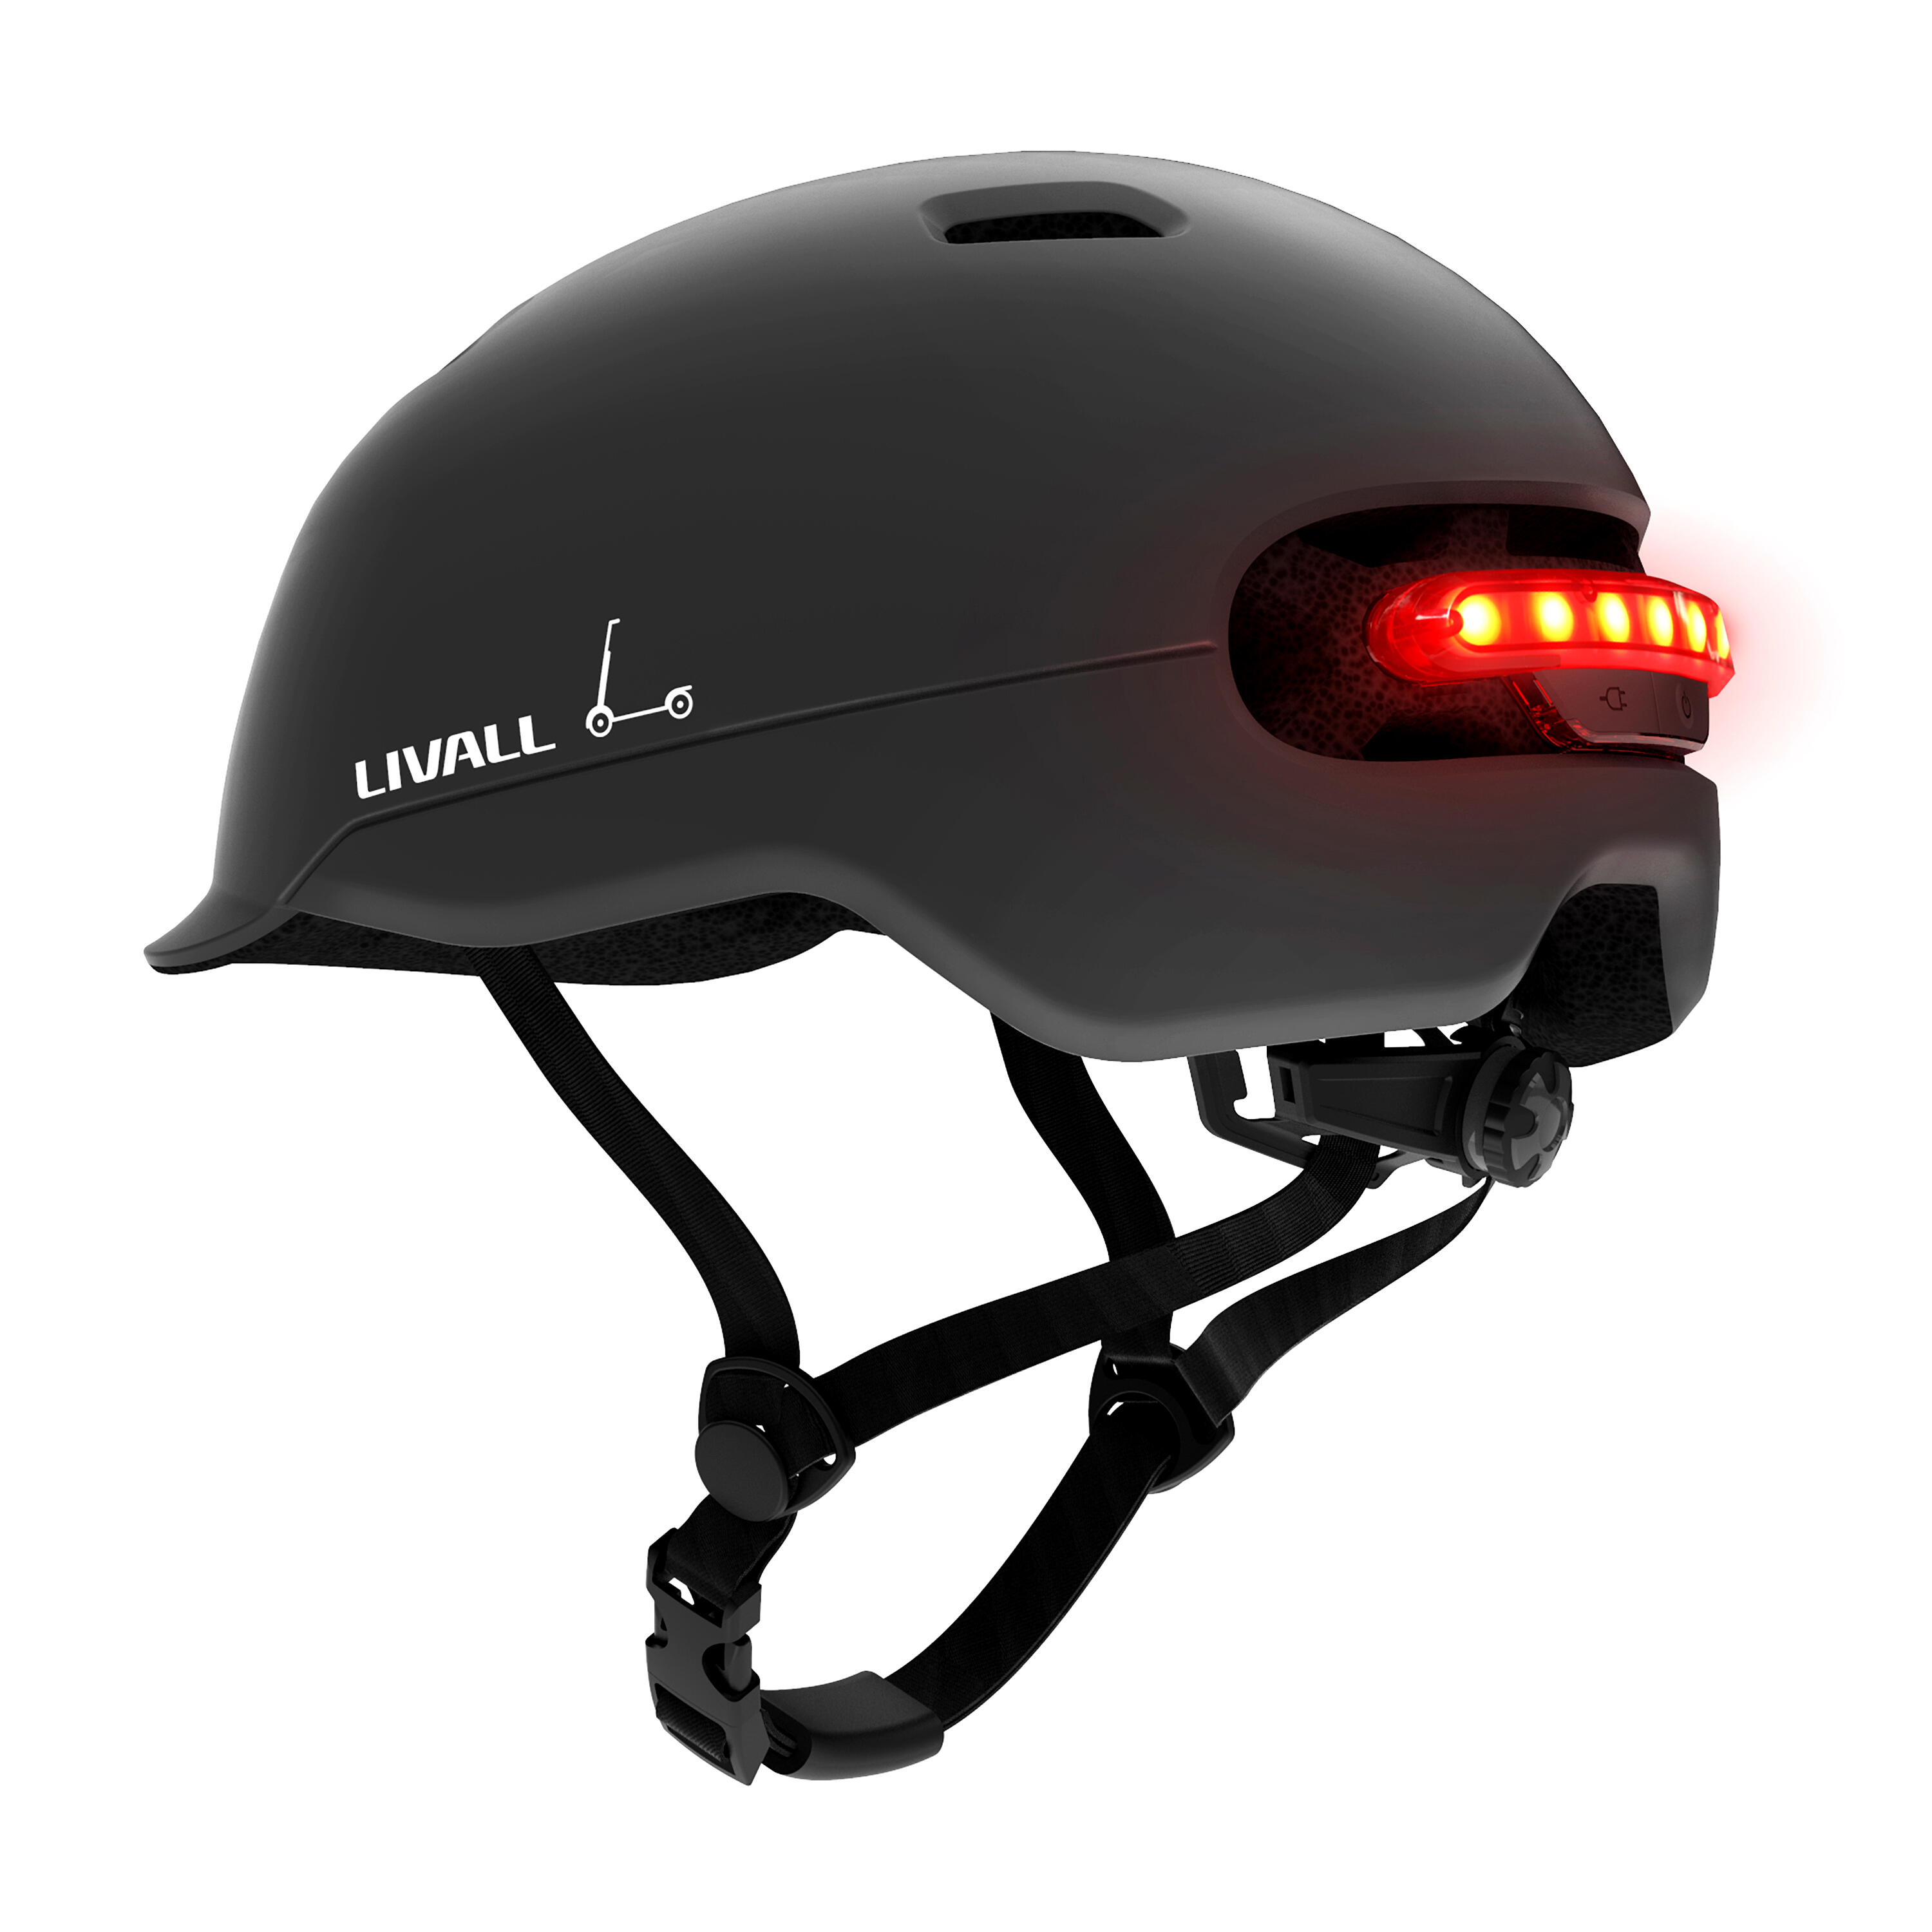 LIVALL Livall C20 Smart Urban Helmet